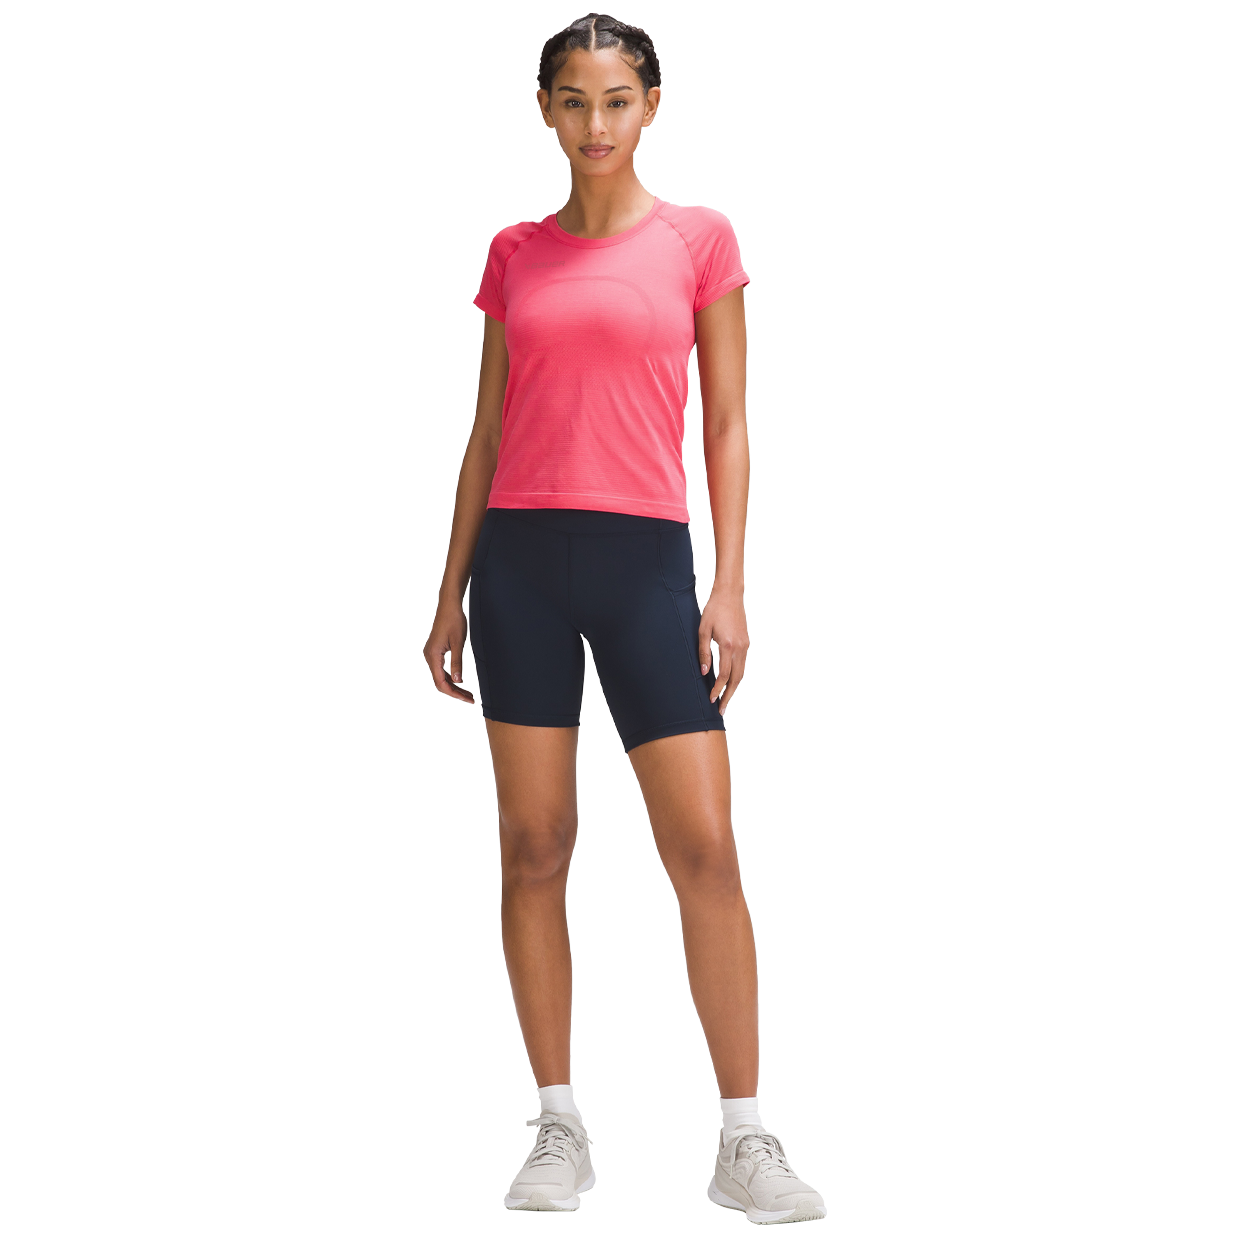 lululemon Women's Swiftly Tech Short Sleeve Shirt 2.0, Golf Equipment:  Clubs, Balls, Bags